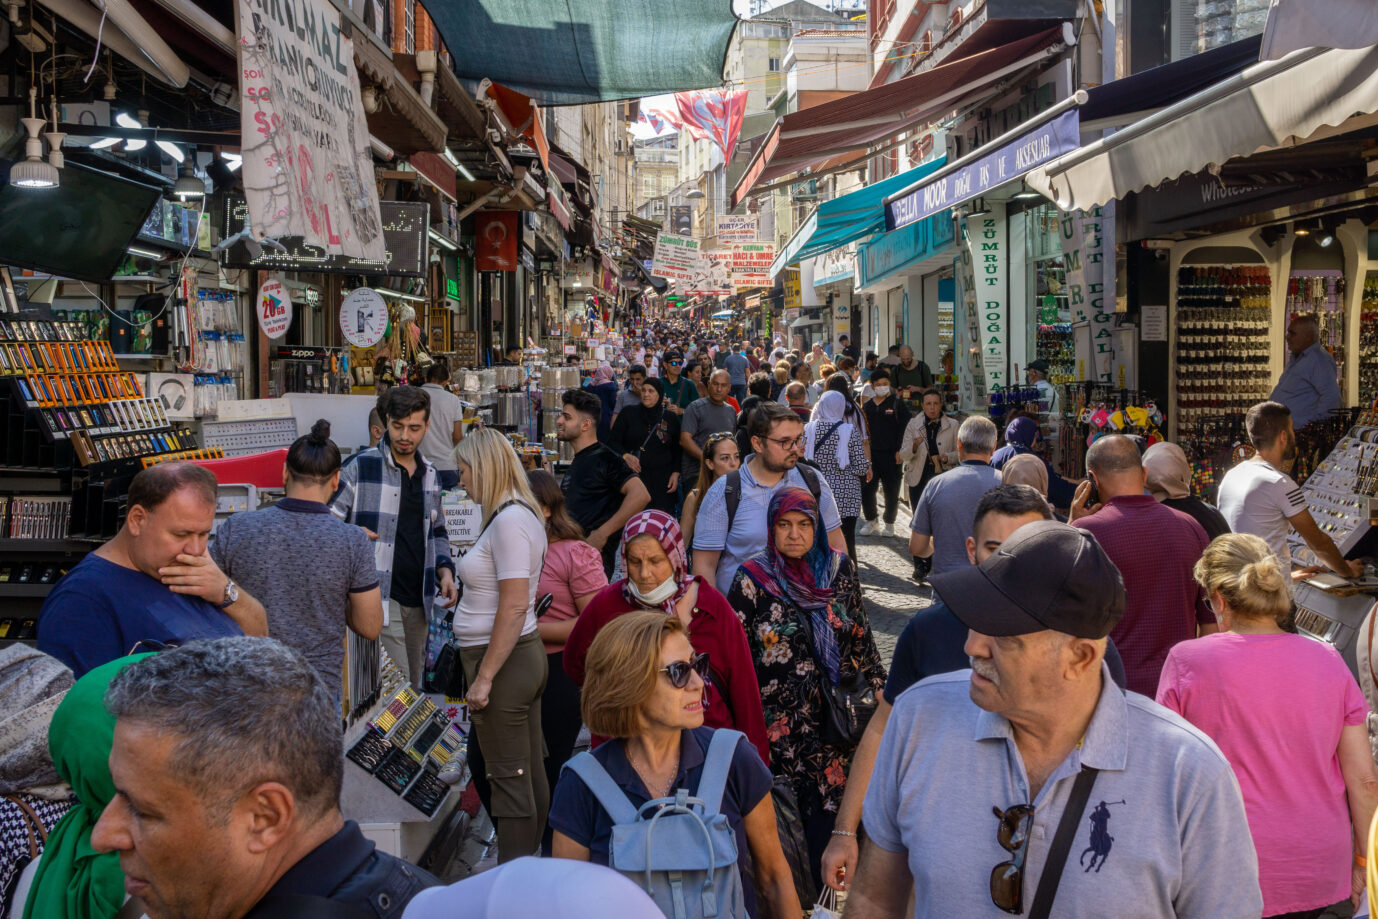 Menschen drängen sich dicht auf einem Markt in Istanbul